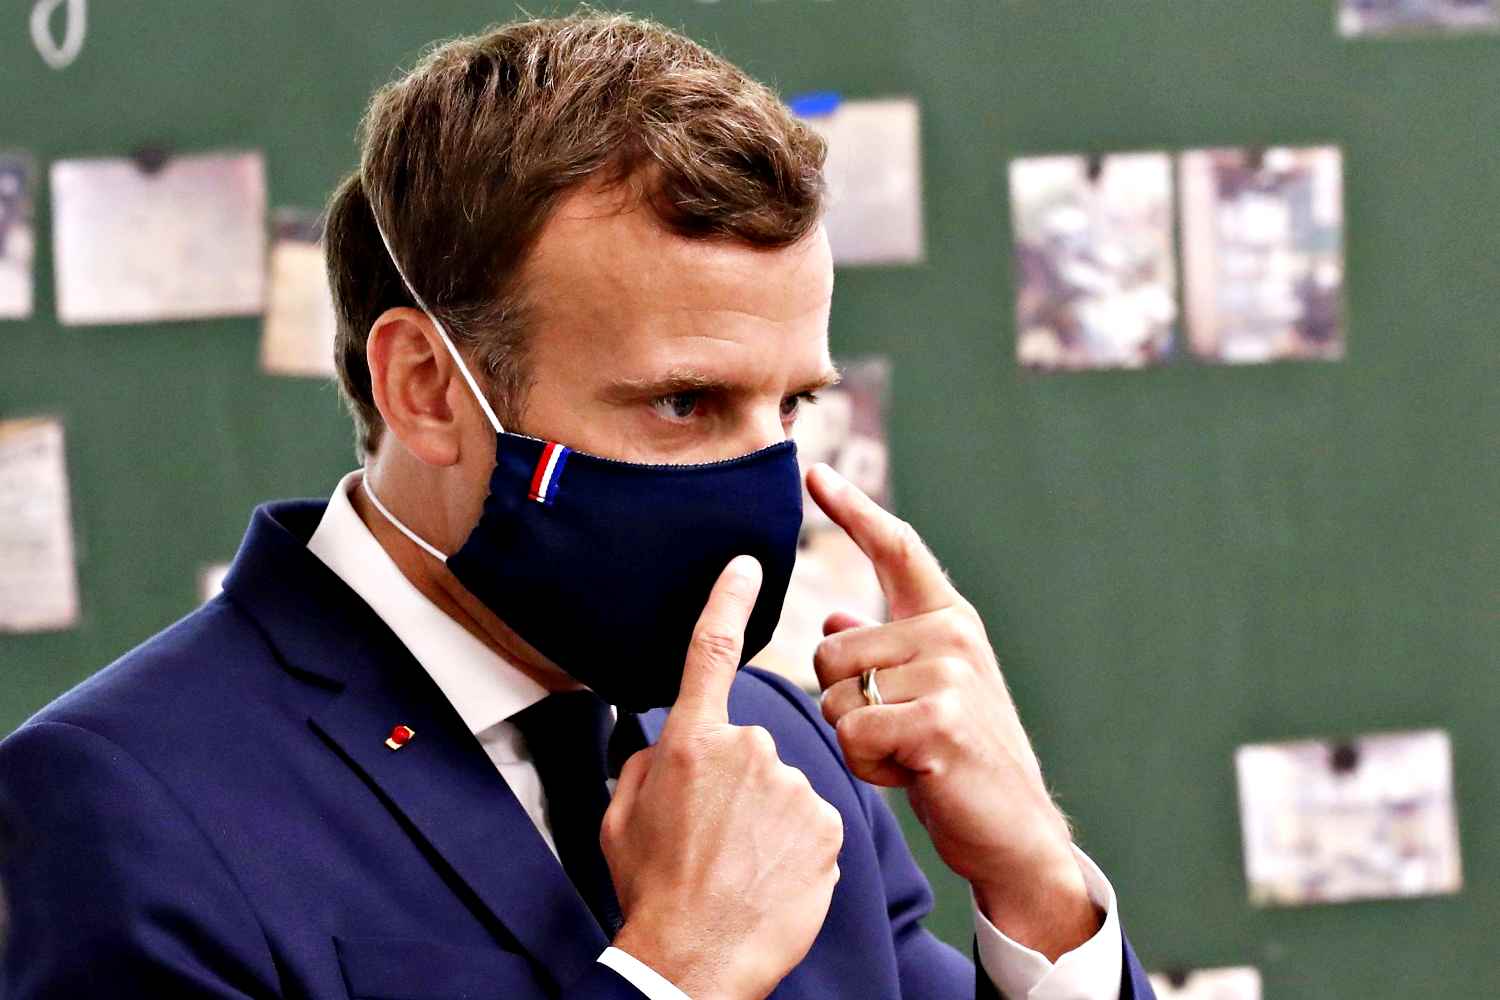 “Indegno” e “volgare”: rivolta contro Macron dopo parole su no vax